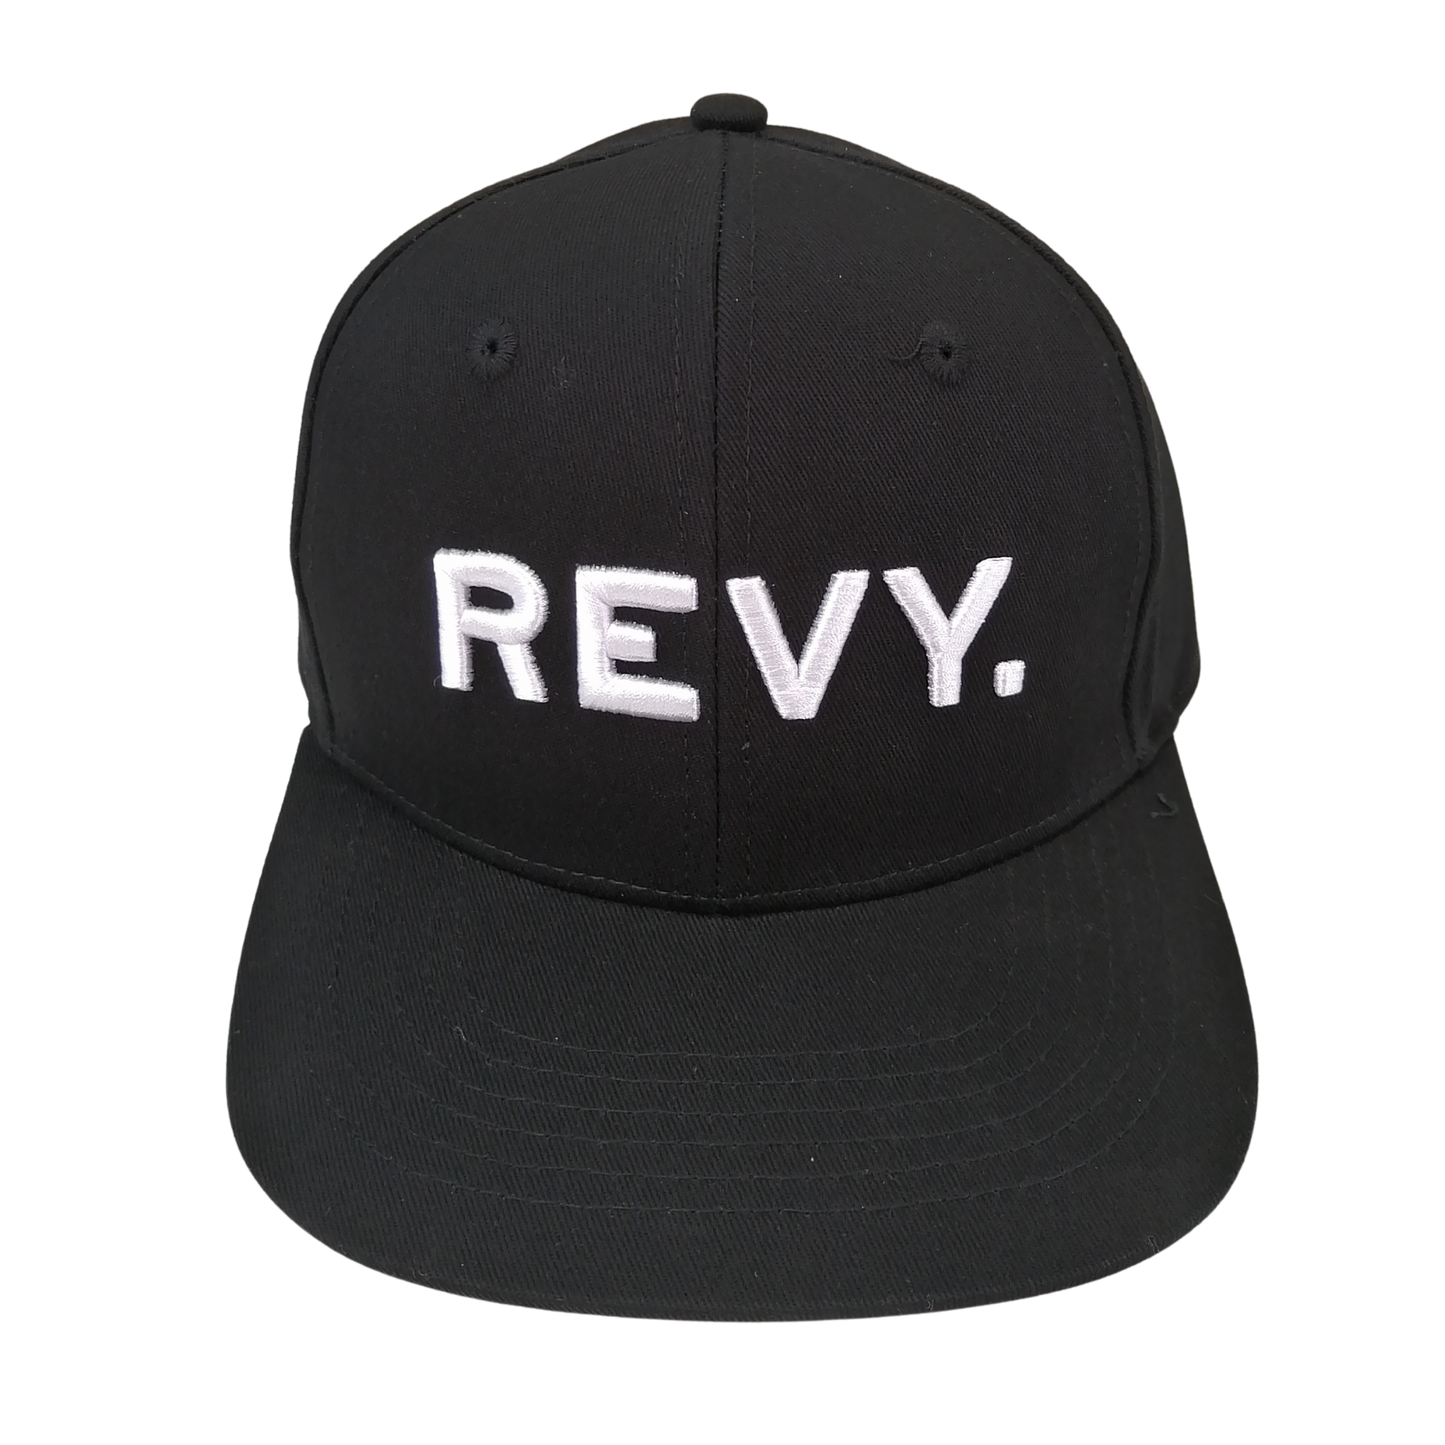 REVY. HAT, FULL BACK